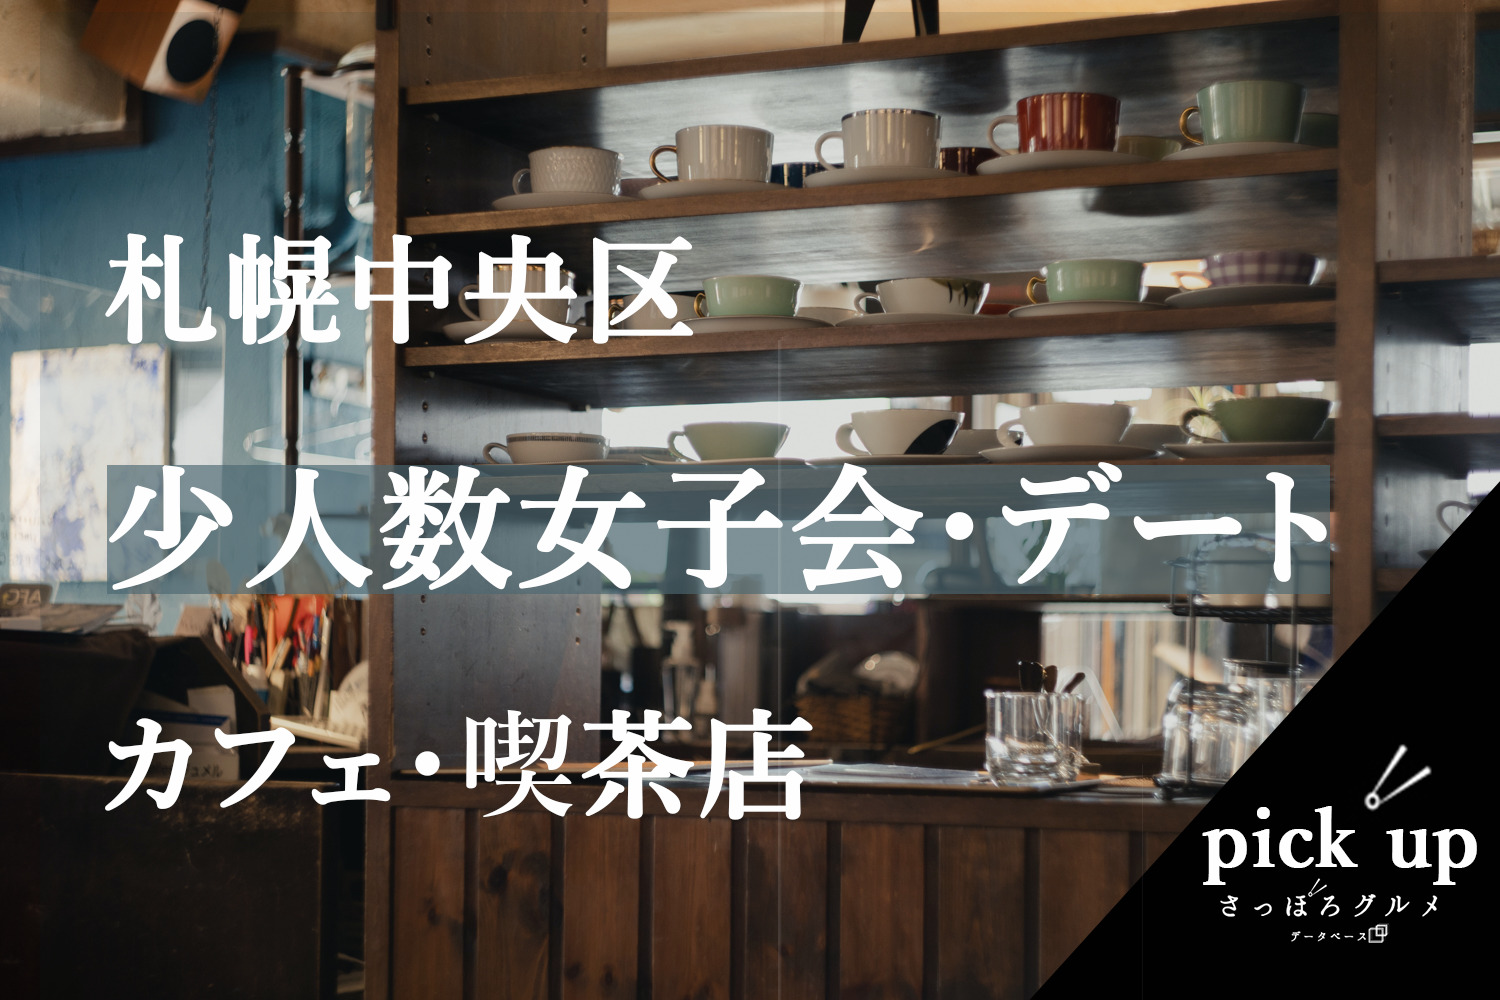 22年 少人数女子会 デートにオススメ 札幌中央区のおしゃれカフェ 喫茶店まとめ さっぽろグルメデータベース